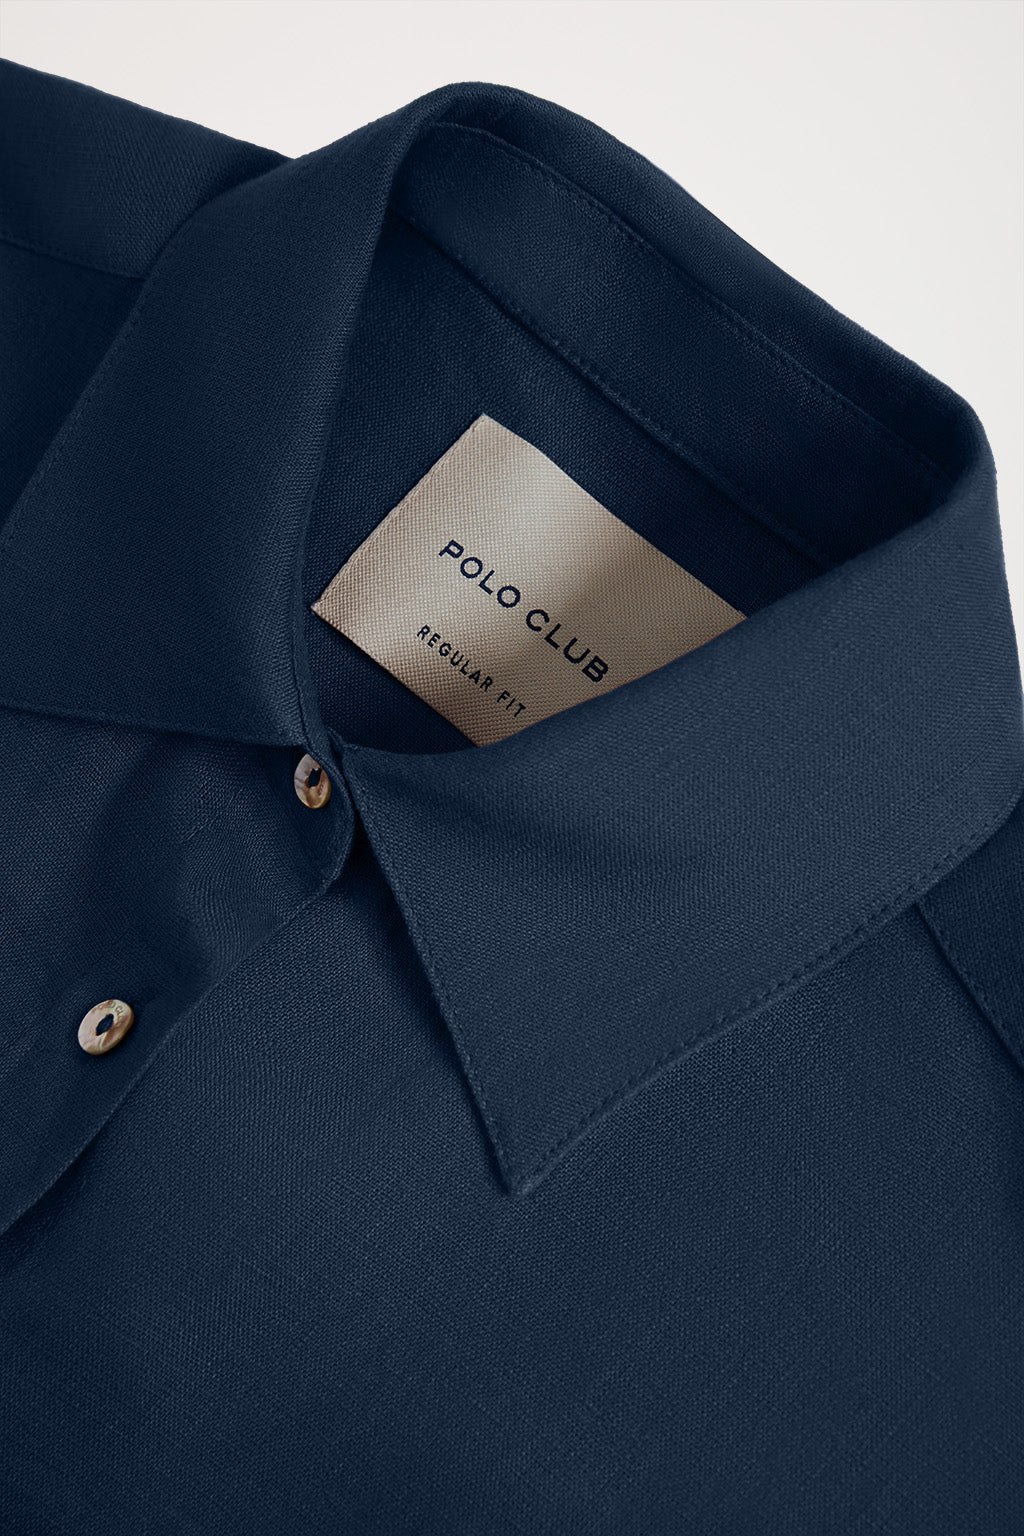 Camiseta azul royal con pequeño logo bordado – Polo Club